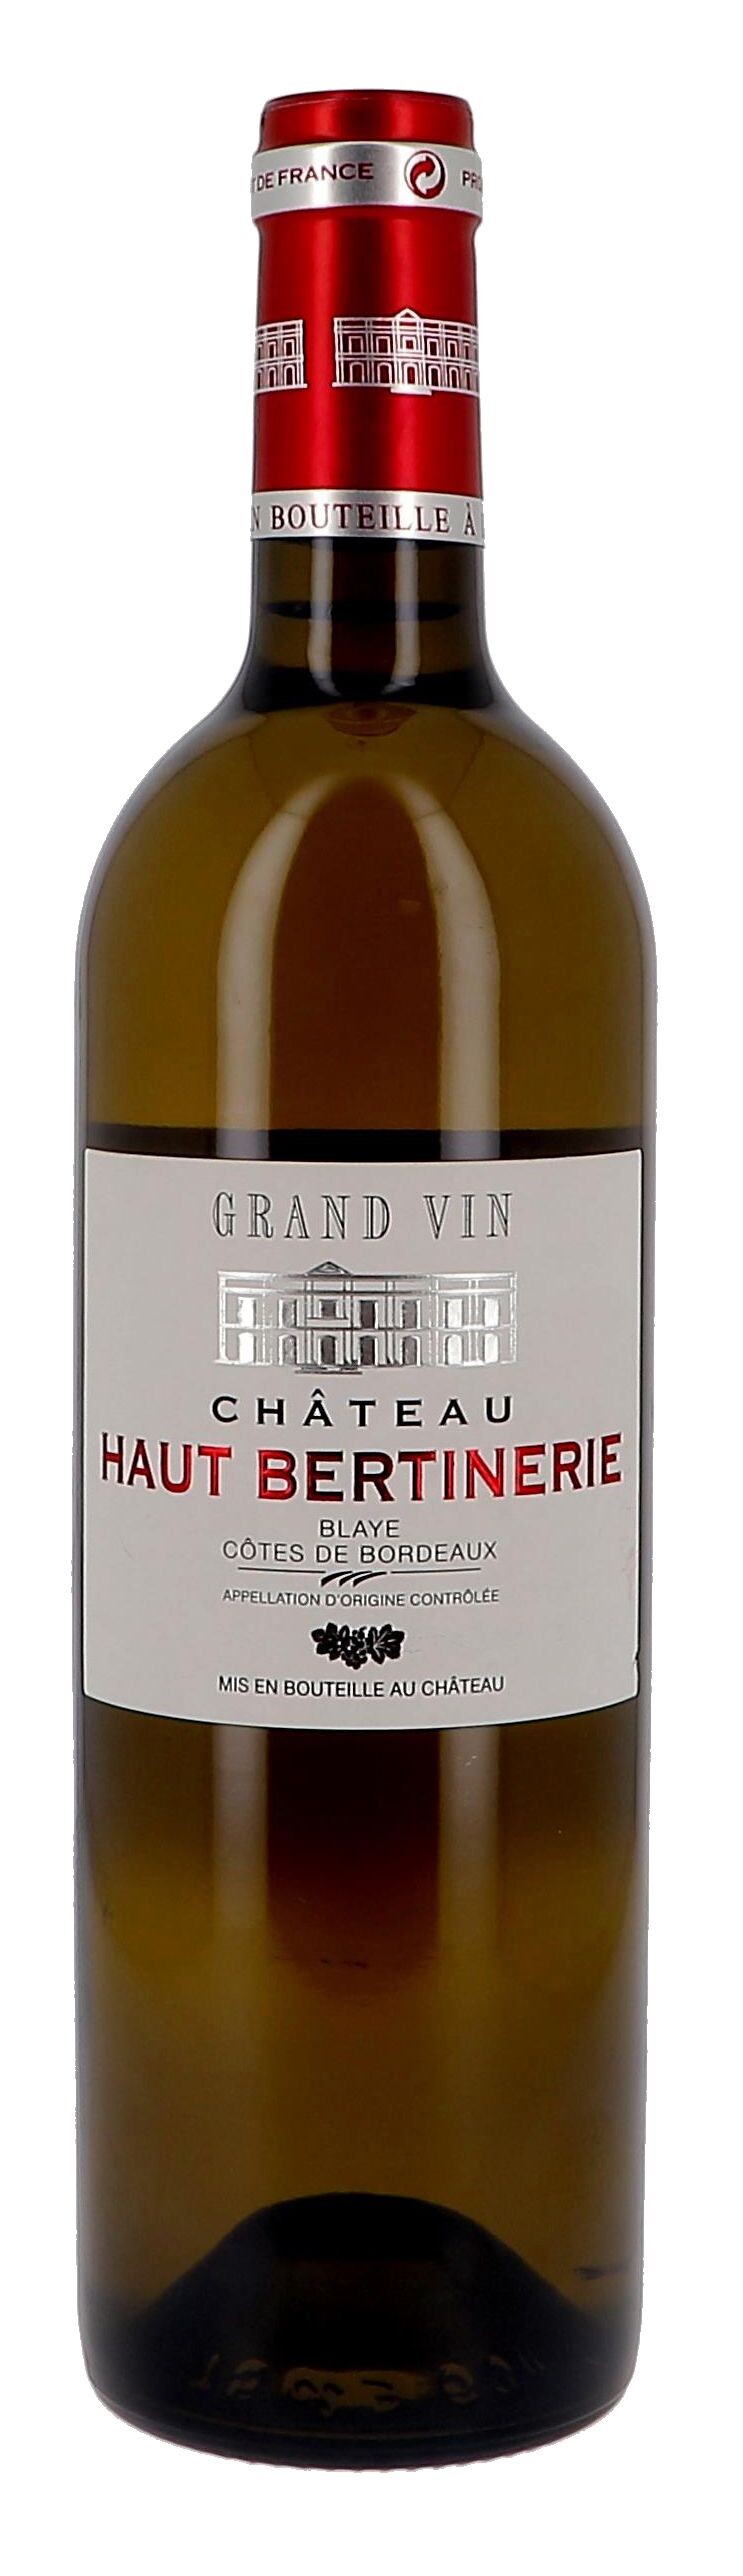 Chateau Haut-Bertinerie white 75cl 2020 Blaye Cotes de Bordeaux